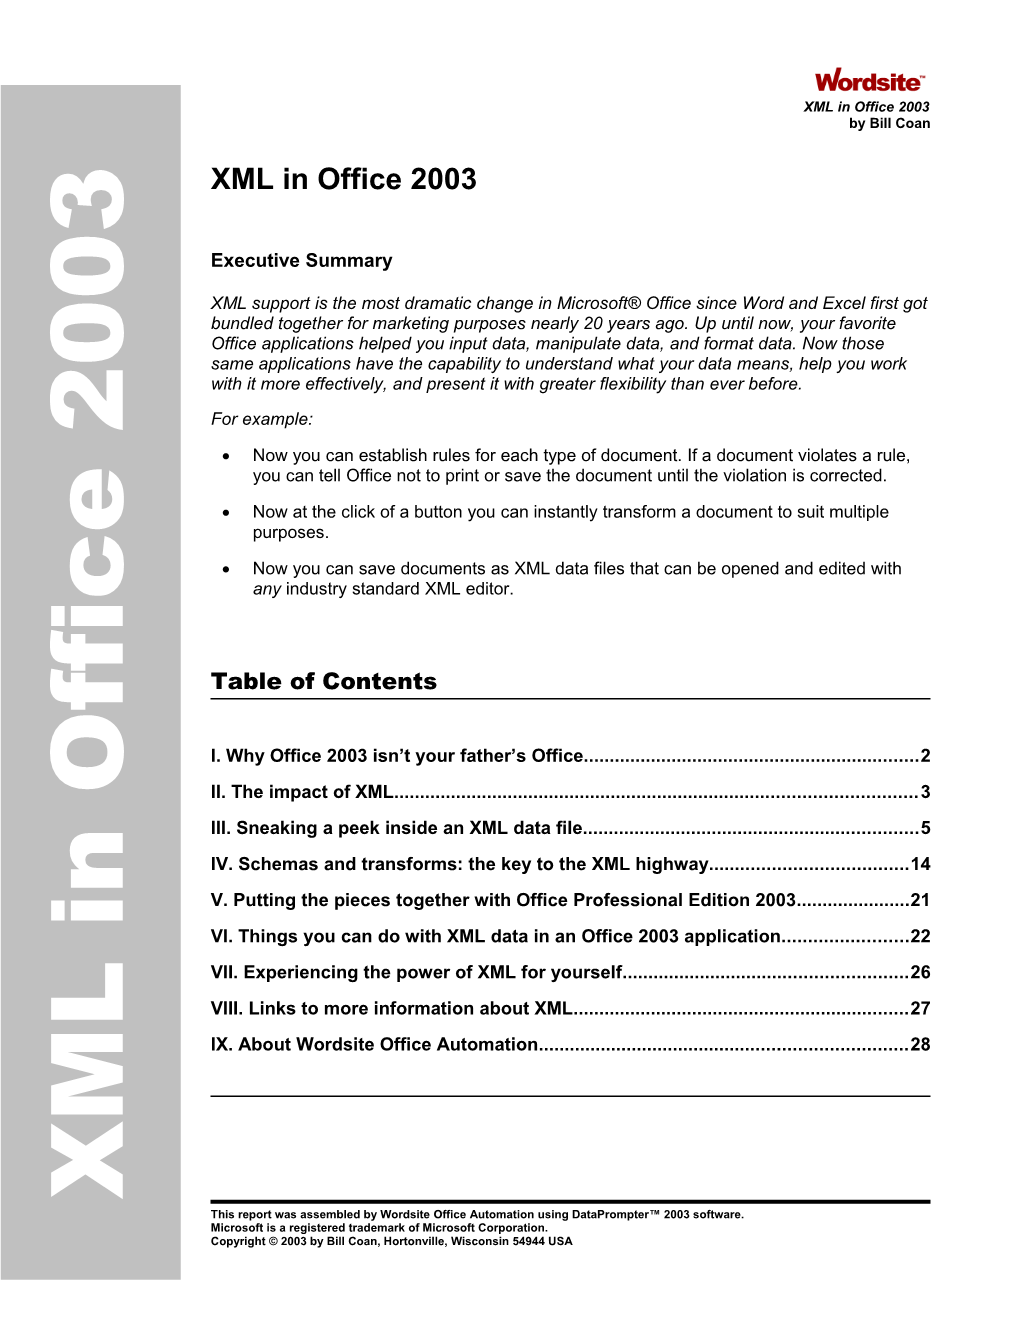 XML in Office 2003